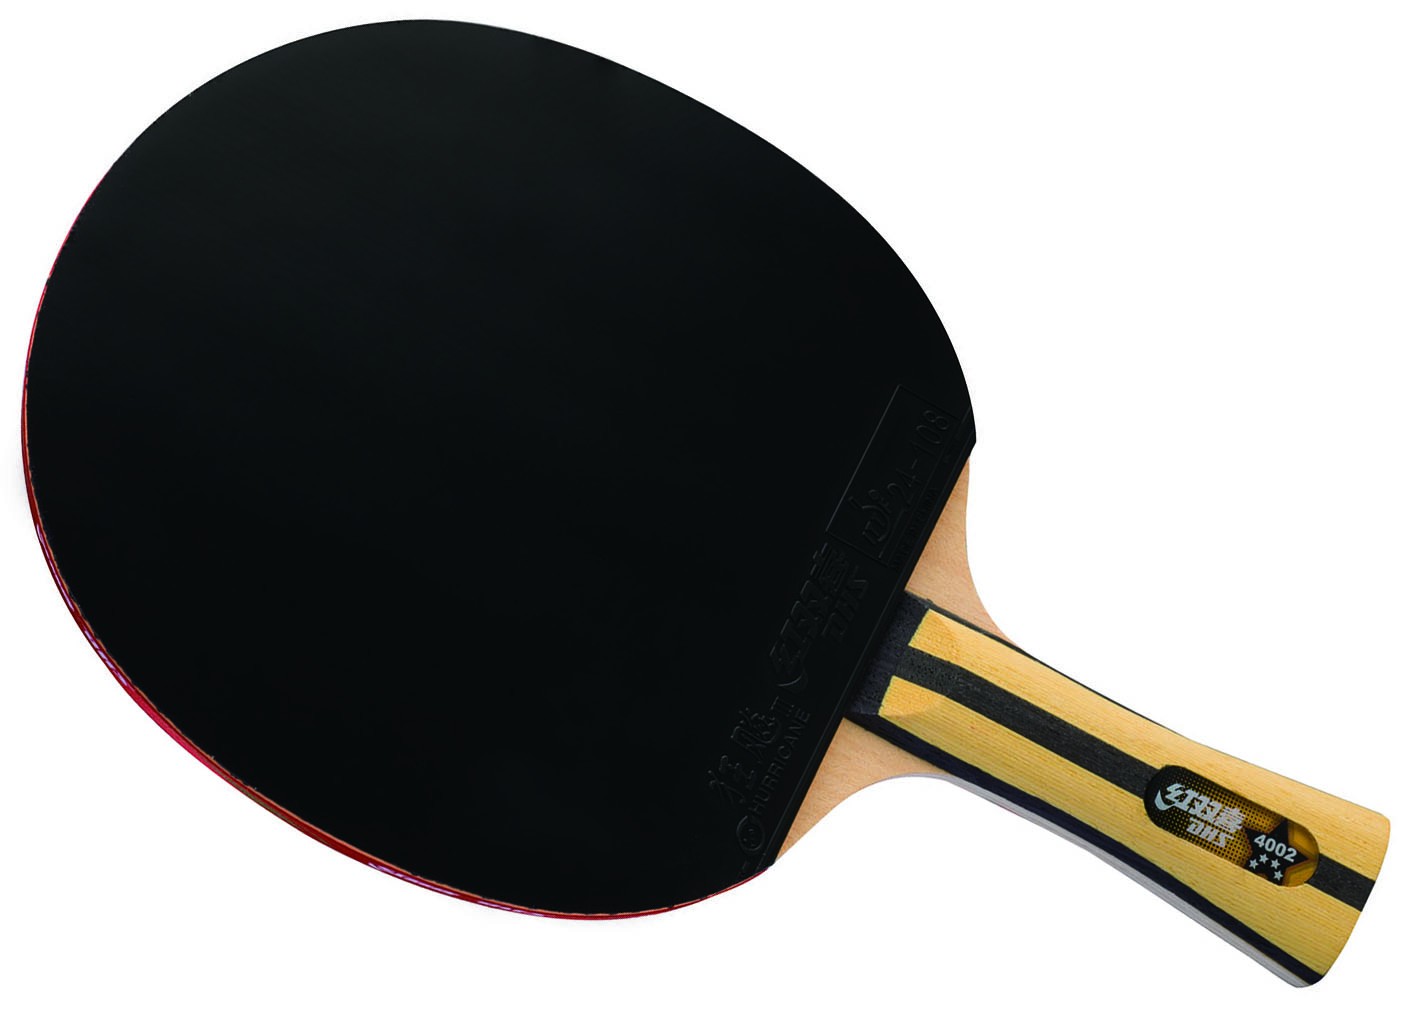 Ракетка для настольного тенниса купить в спб. Ракетка DHS Racket 4002. Ракетка для настольного тенниса Donic Waldner Carbon. Ракетка для настольного тенниса Donic vari-Slick.